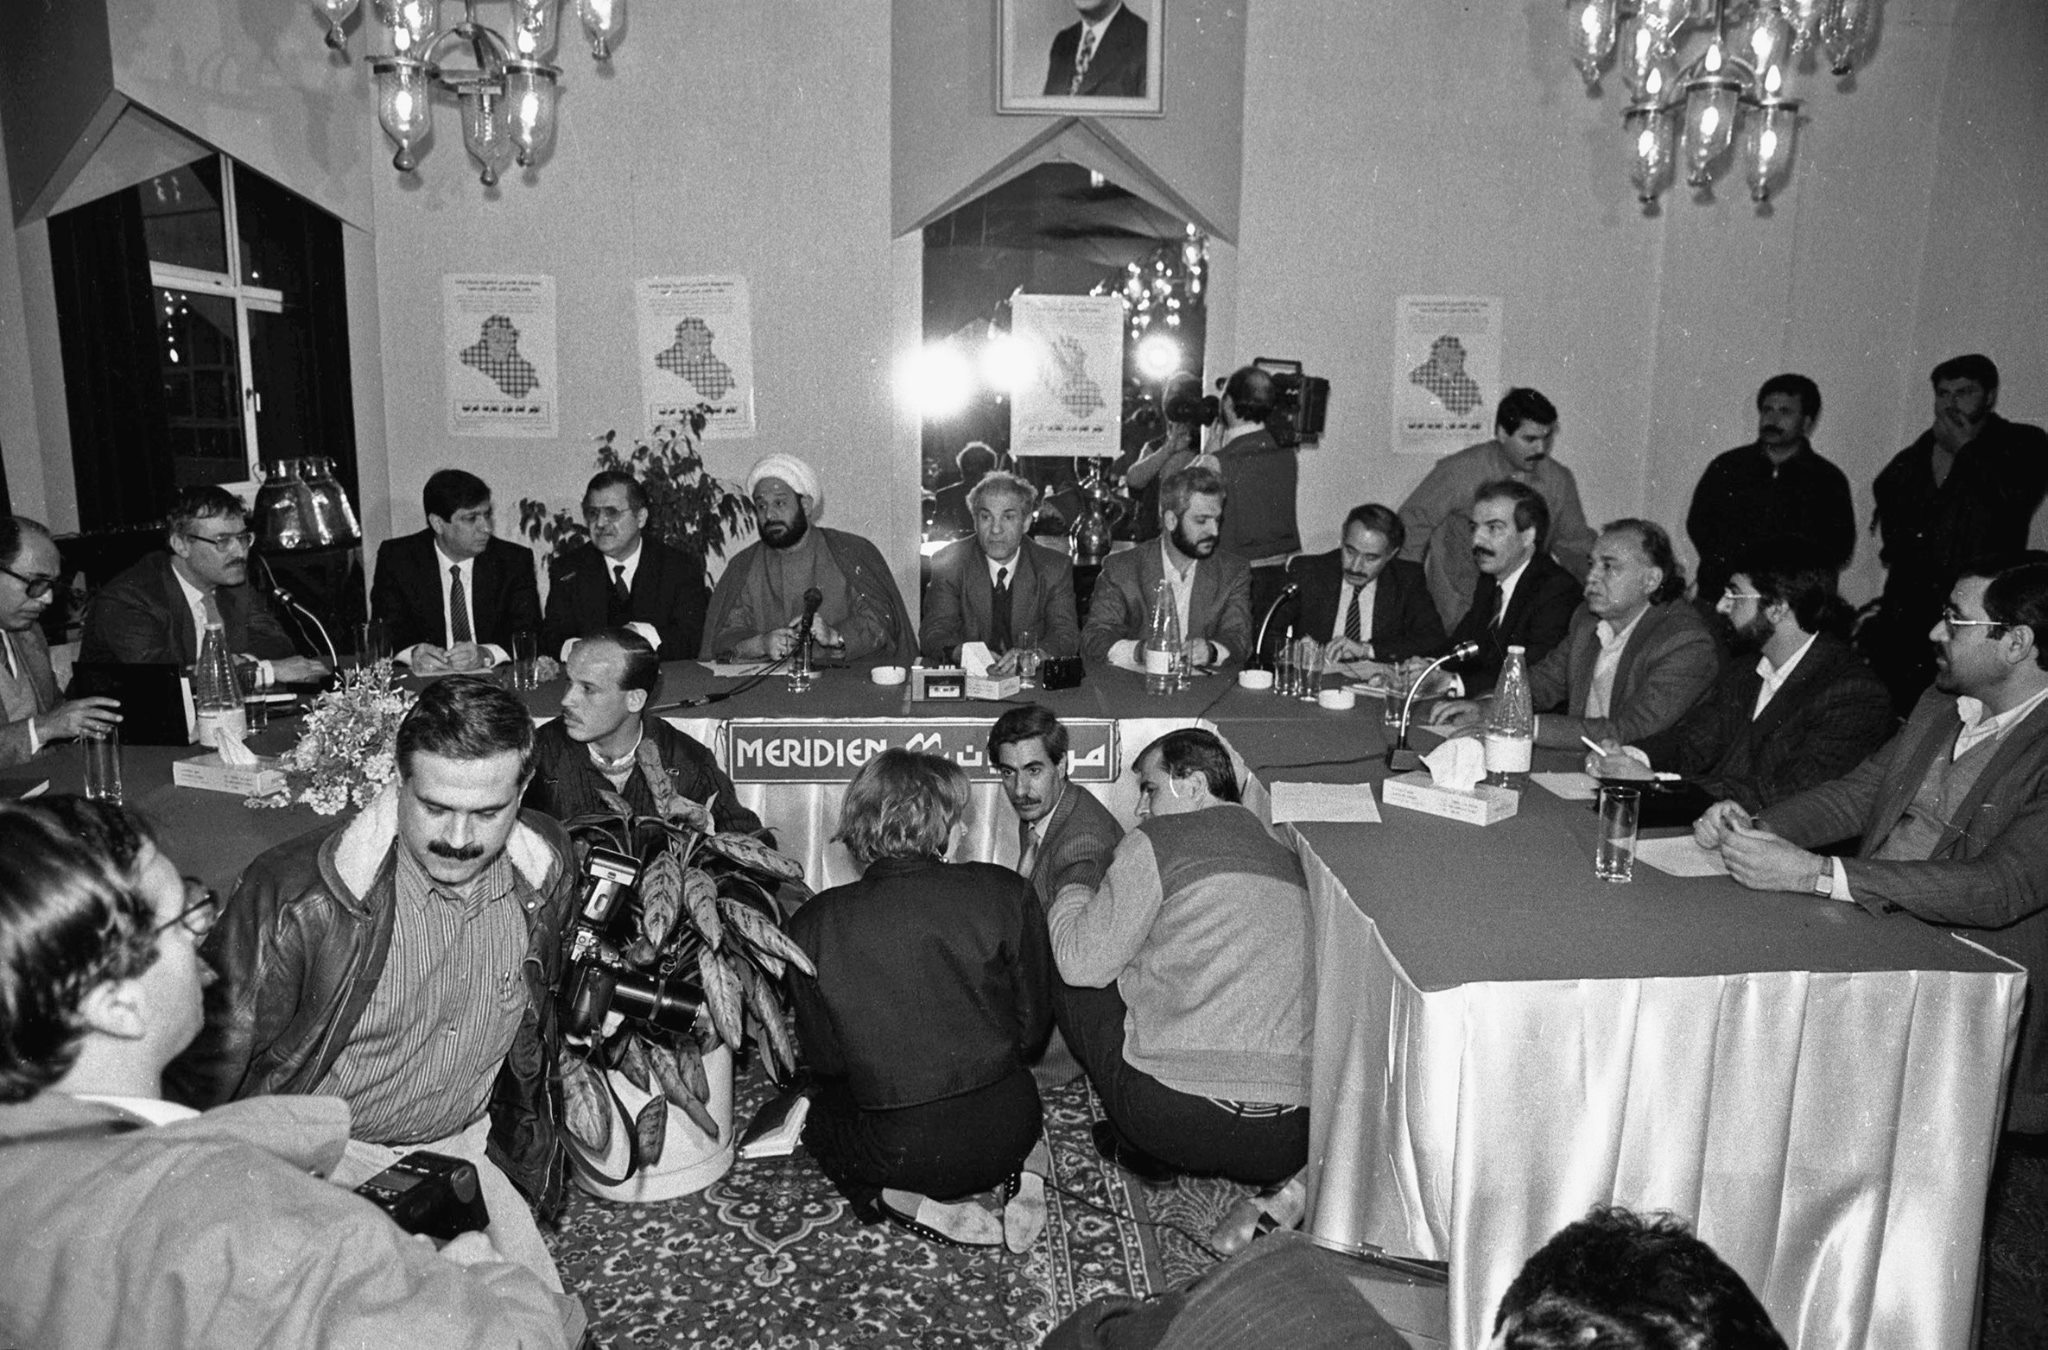 التاريخ السوري المعاصر - المؤتمر الصحفي للمعارضة العراقية في دمشق عام 1991